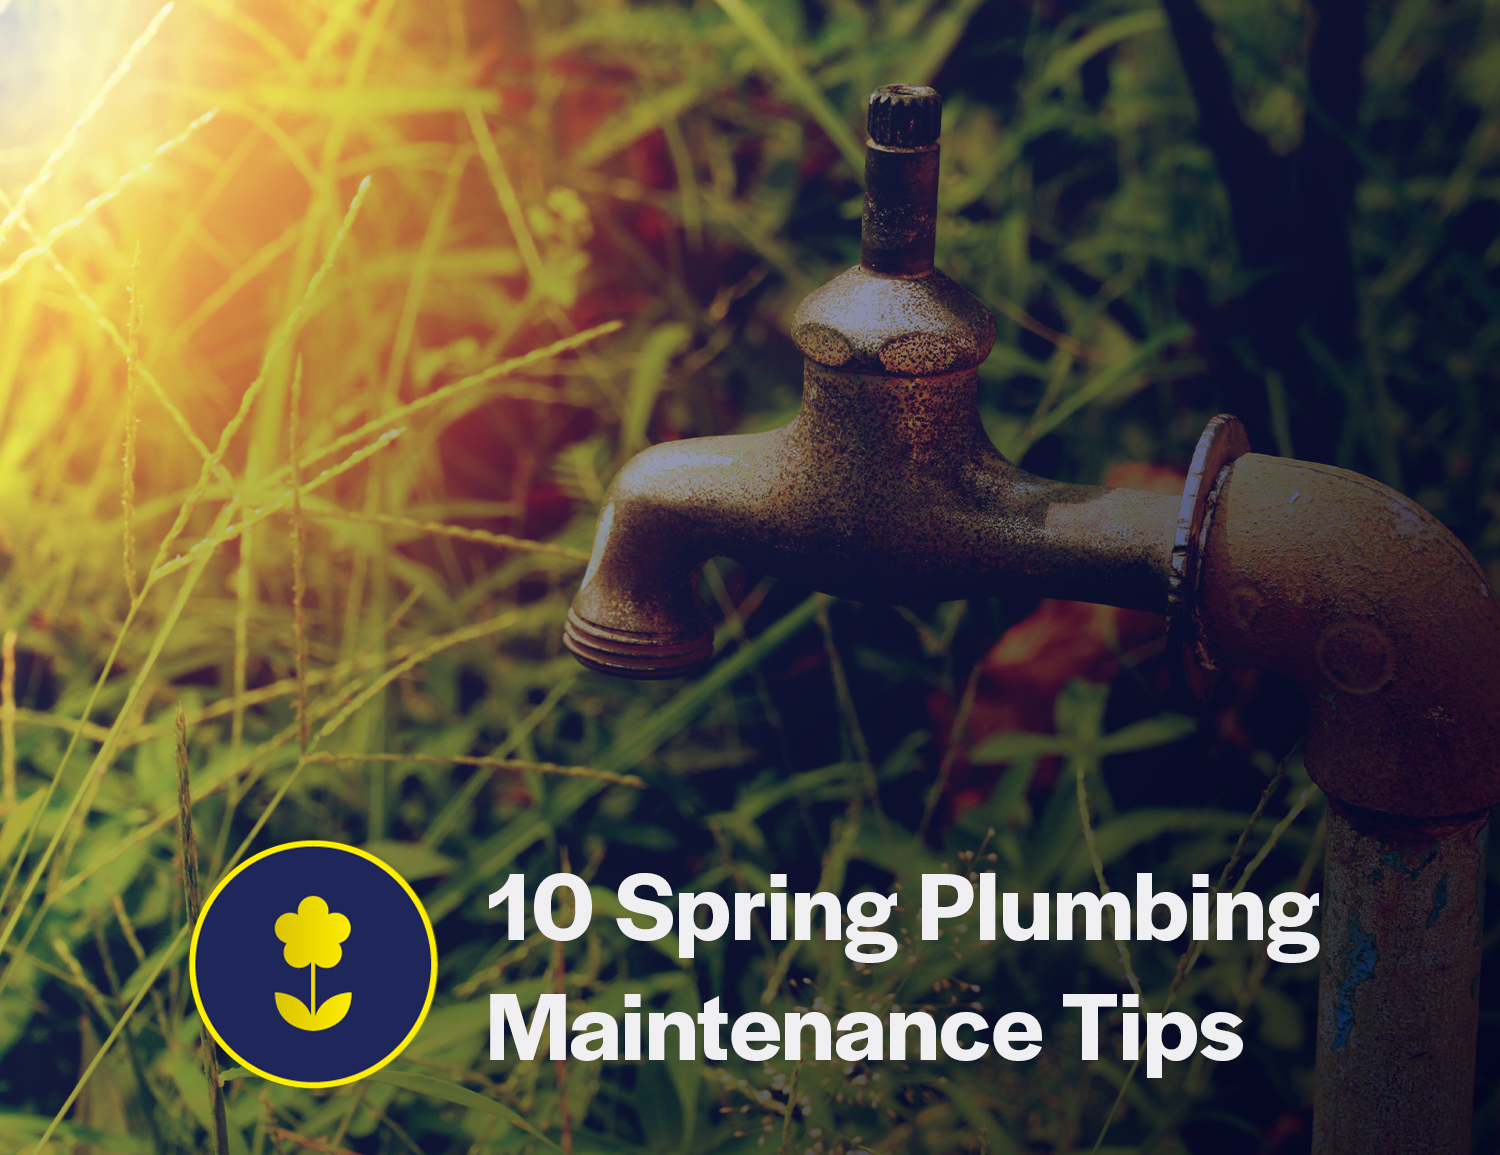 10 Spring Plumbing Maintenance Tips